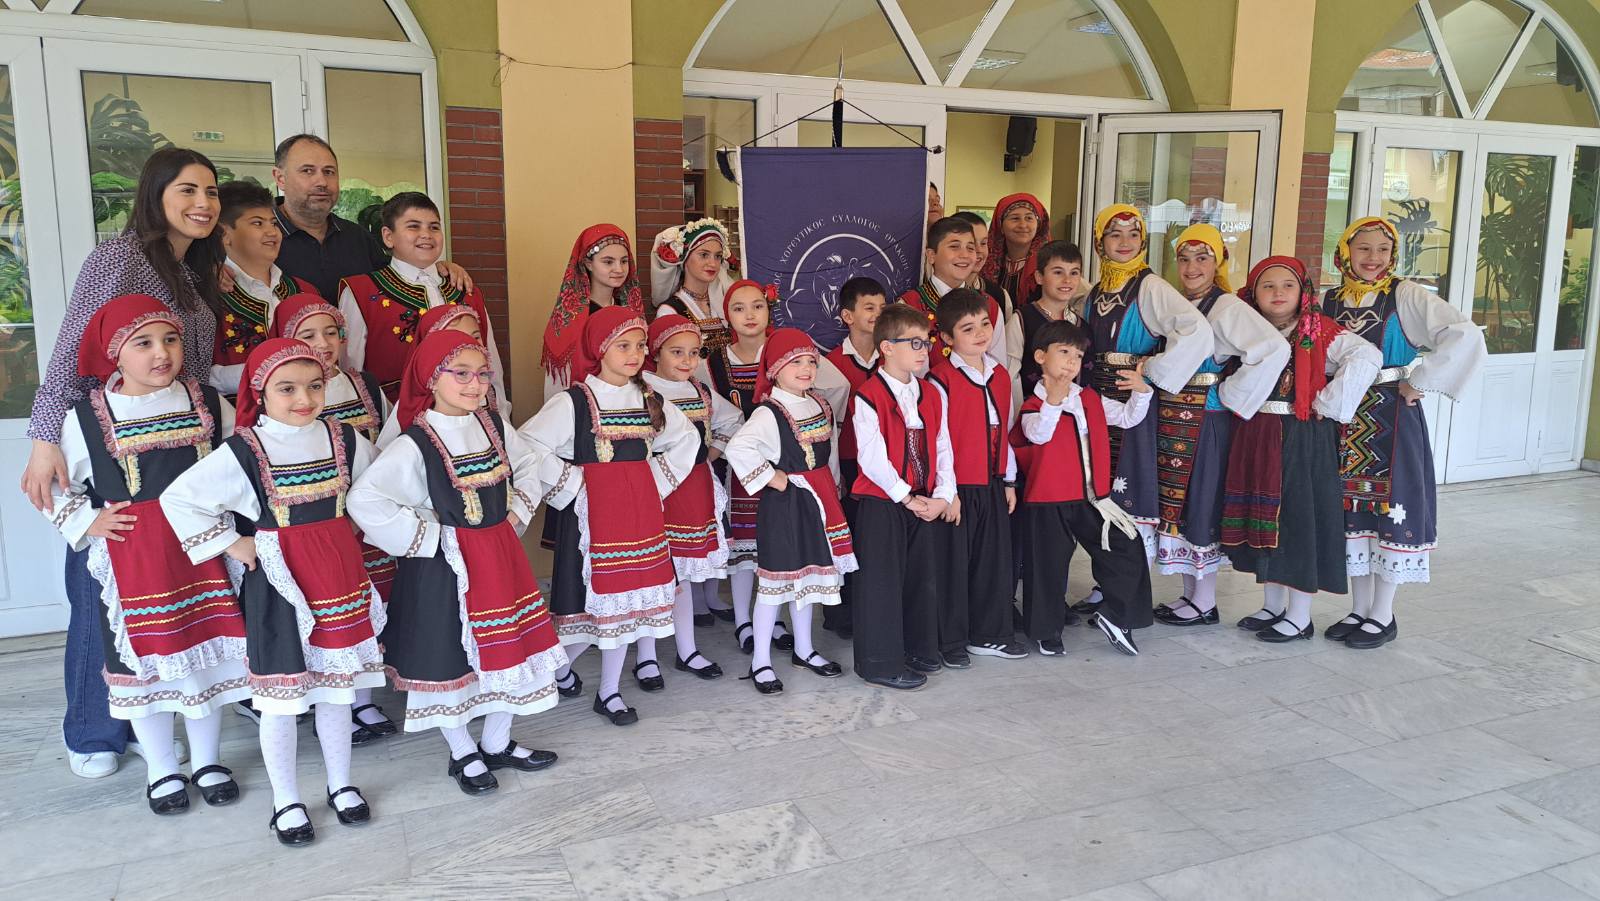 Συμμετοχή του Χορευτικού Συλλόγου Θρακών Κομοτηνής  στο 16ο Παιδικό Φεστιβάλ Παραδοσιακών Χορών Καλαμπακίου Δράμας (φωτος)